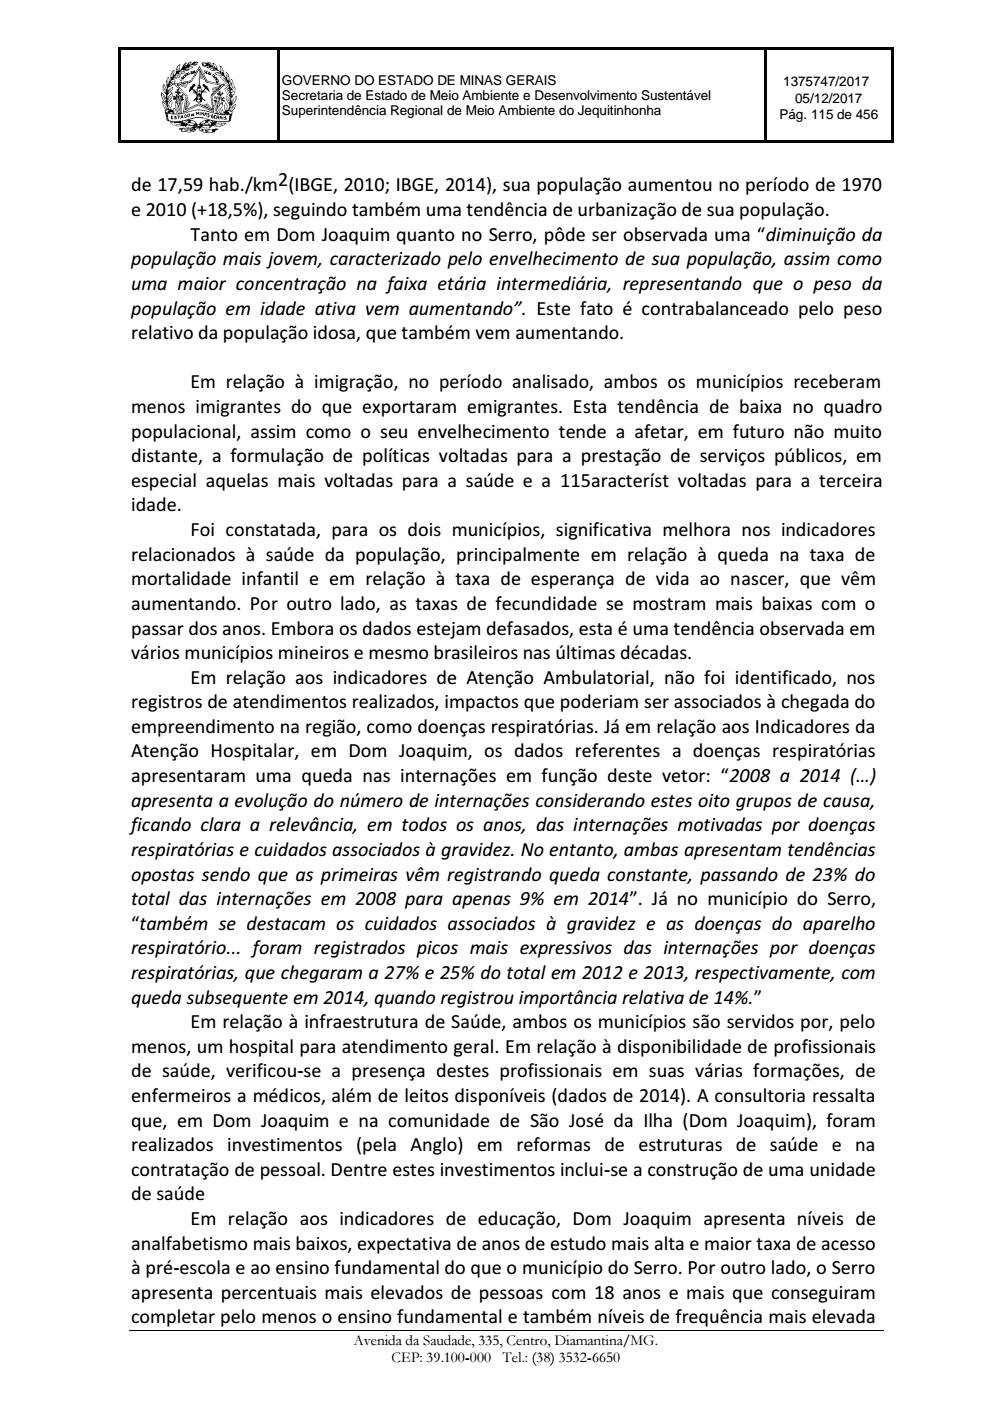 Page 115 from Parecer único da Secretaria de estado de Meio Ambiente e Desenvolvimento Sustentável (SEMAD)